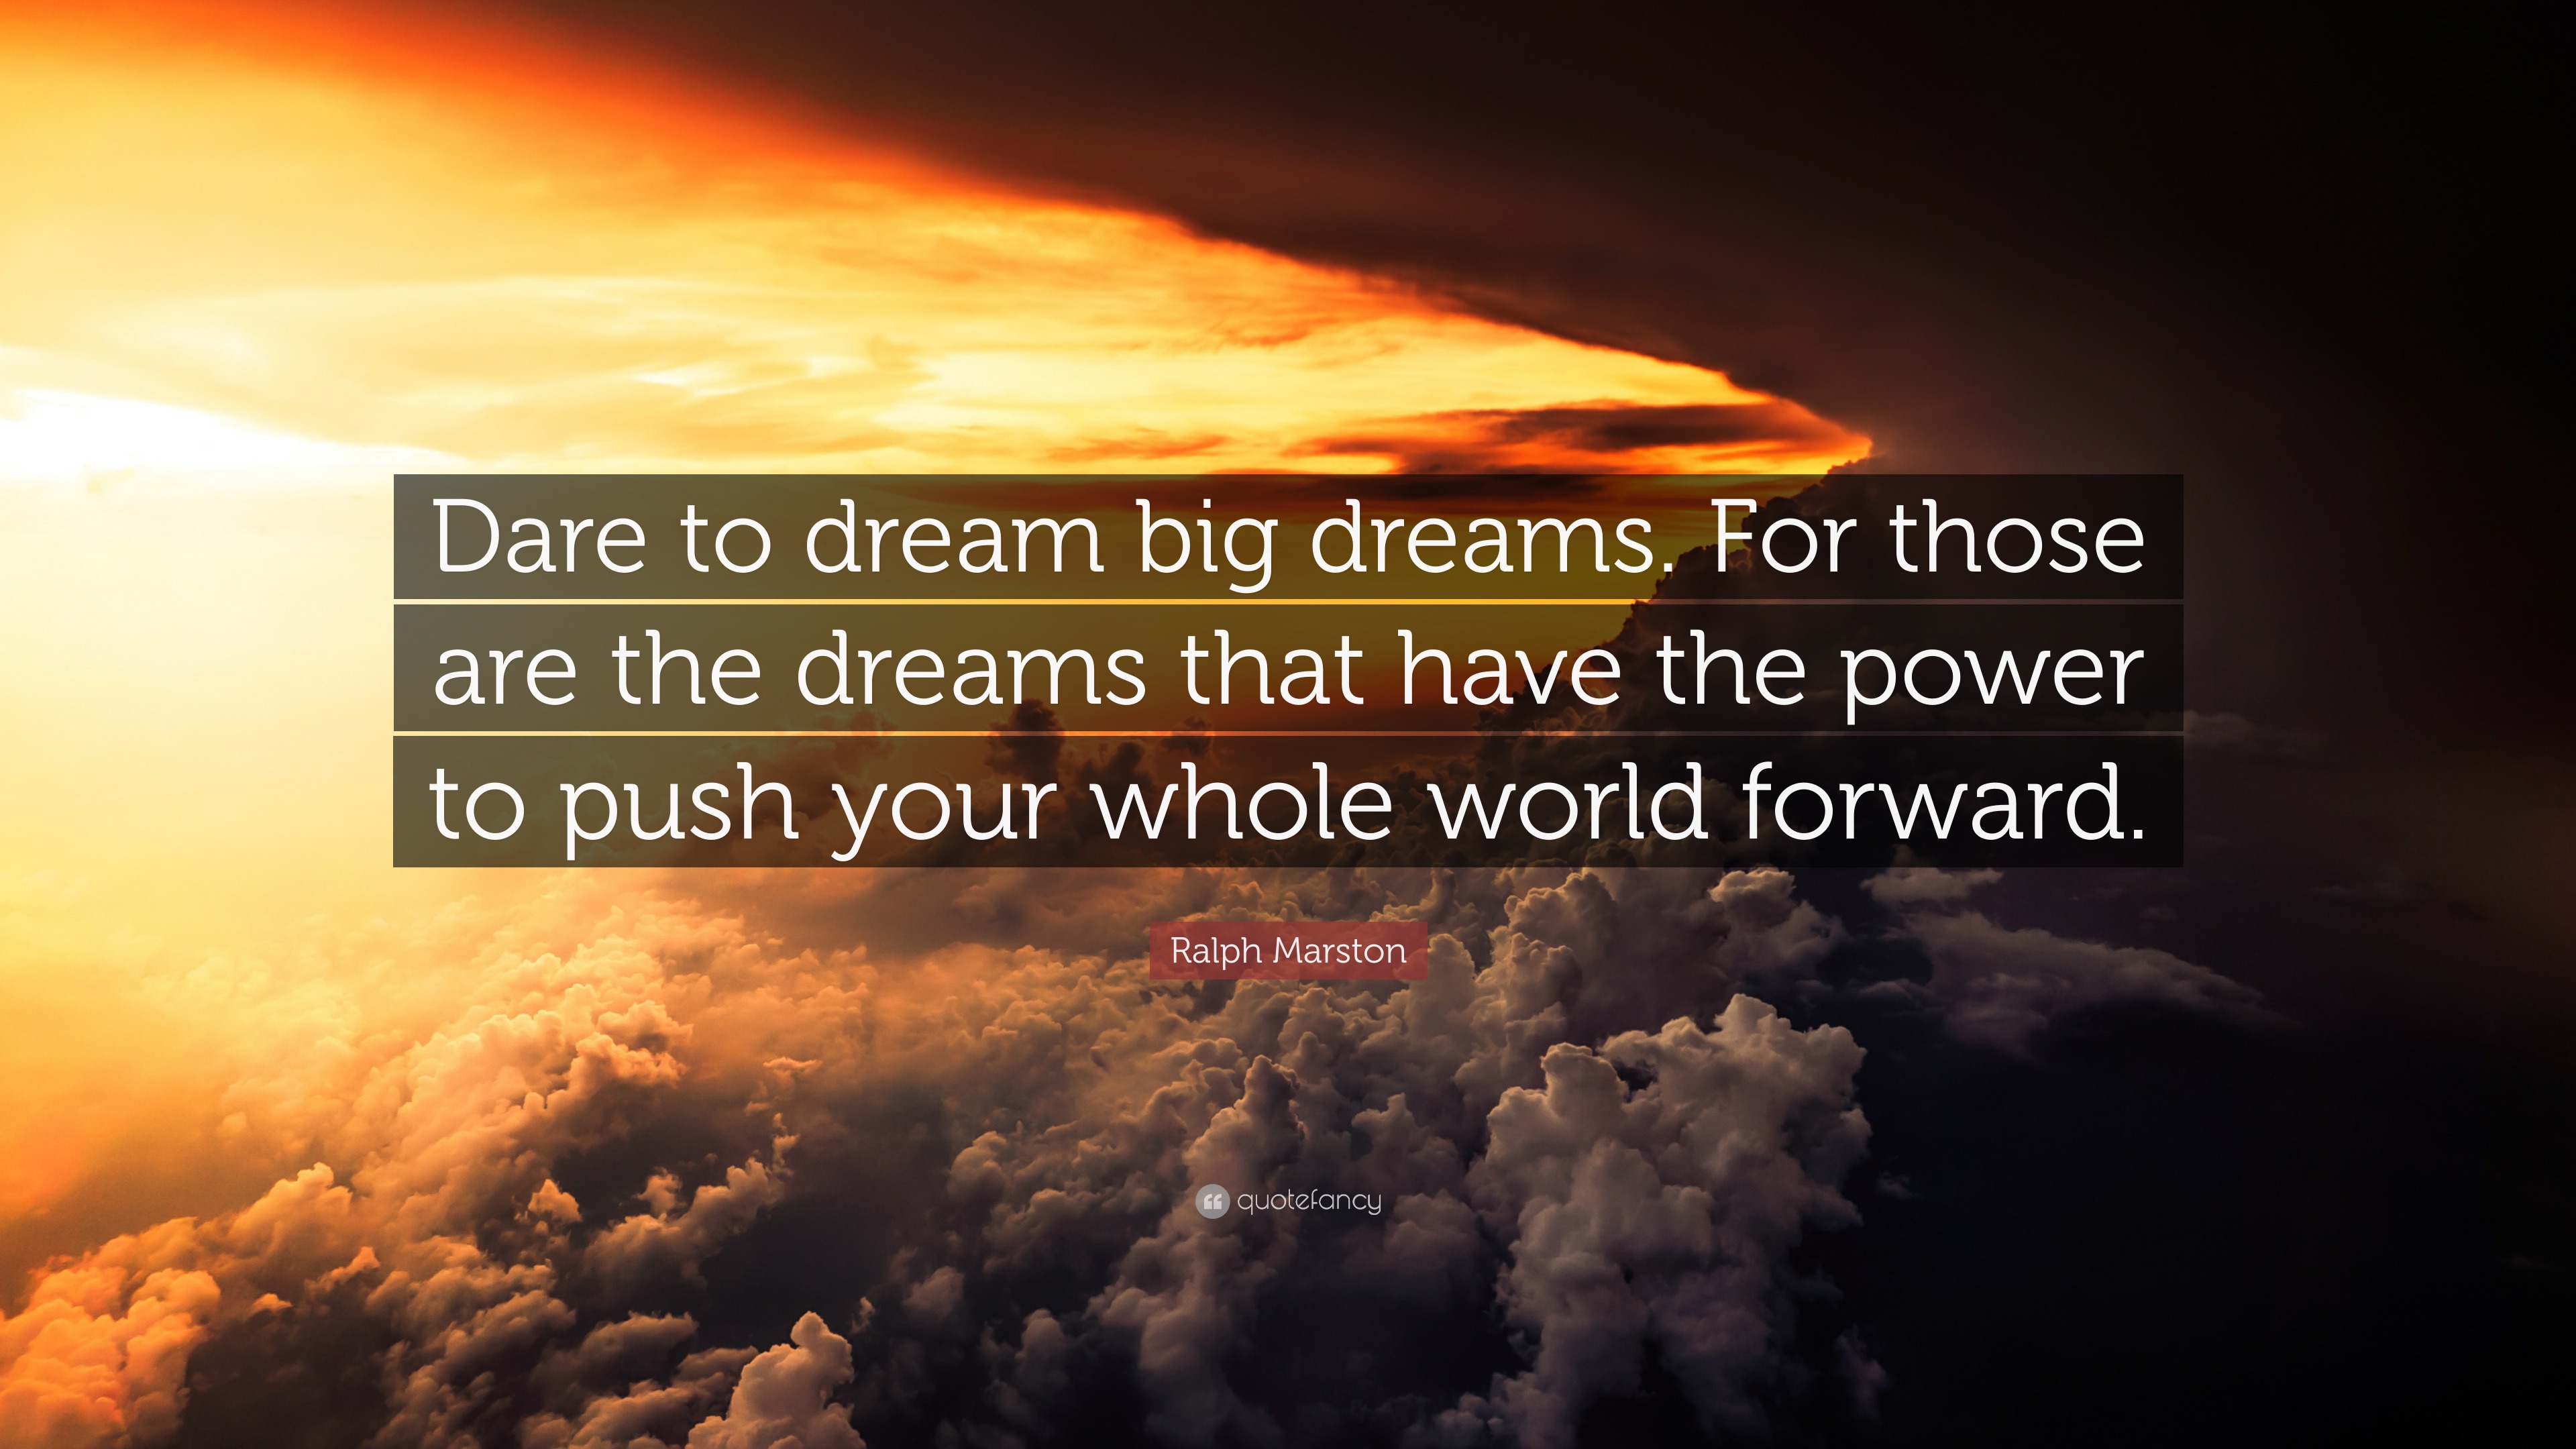 Ralph Marston Quote: “Dare to dream big dreams. For those are the ...